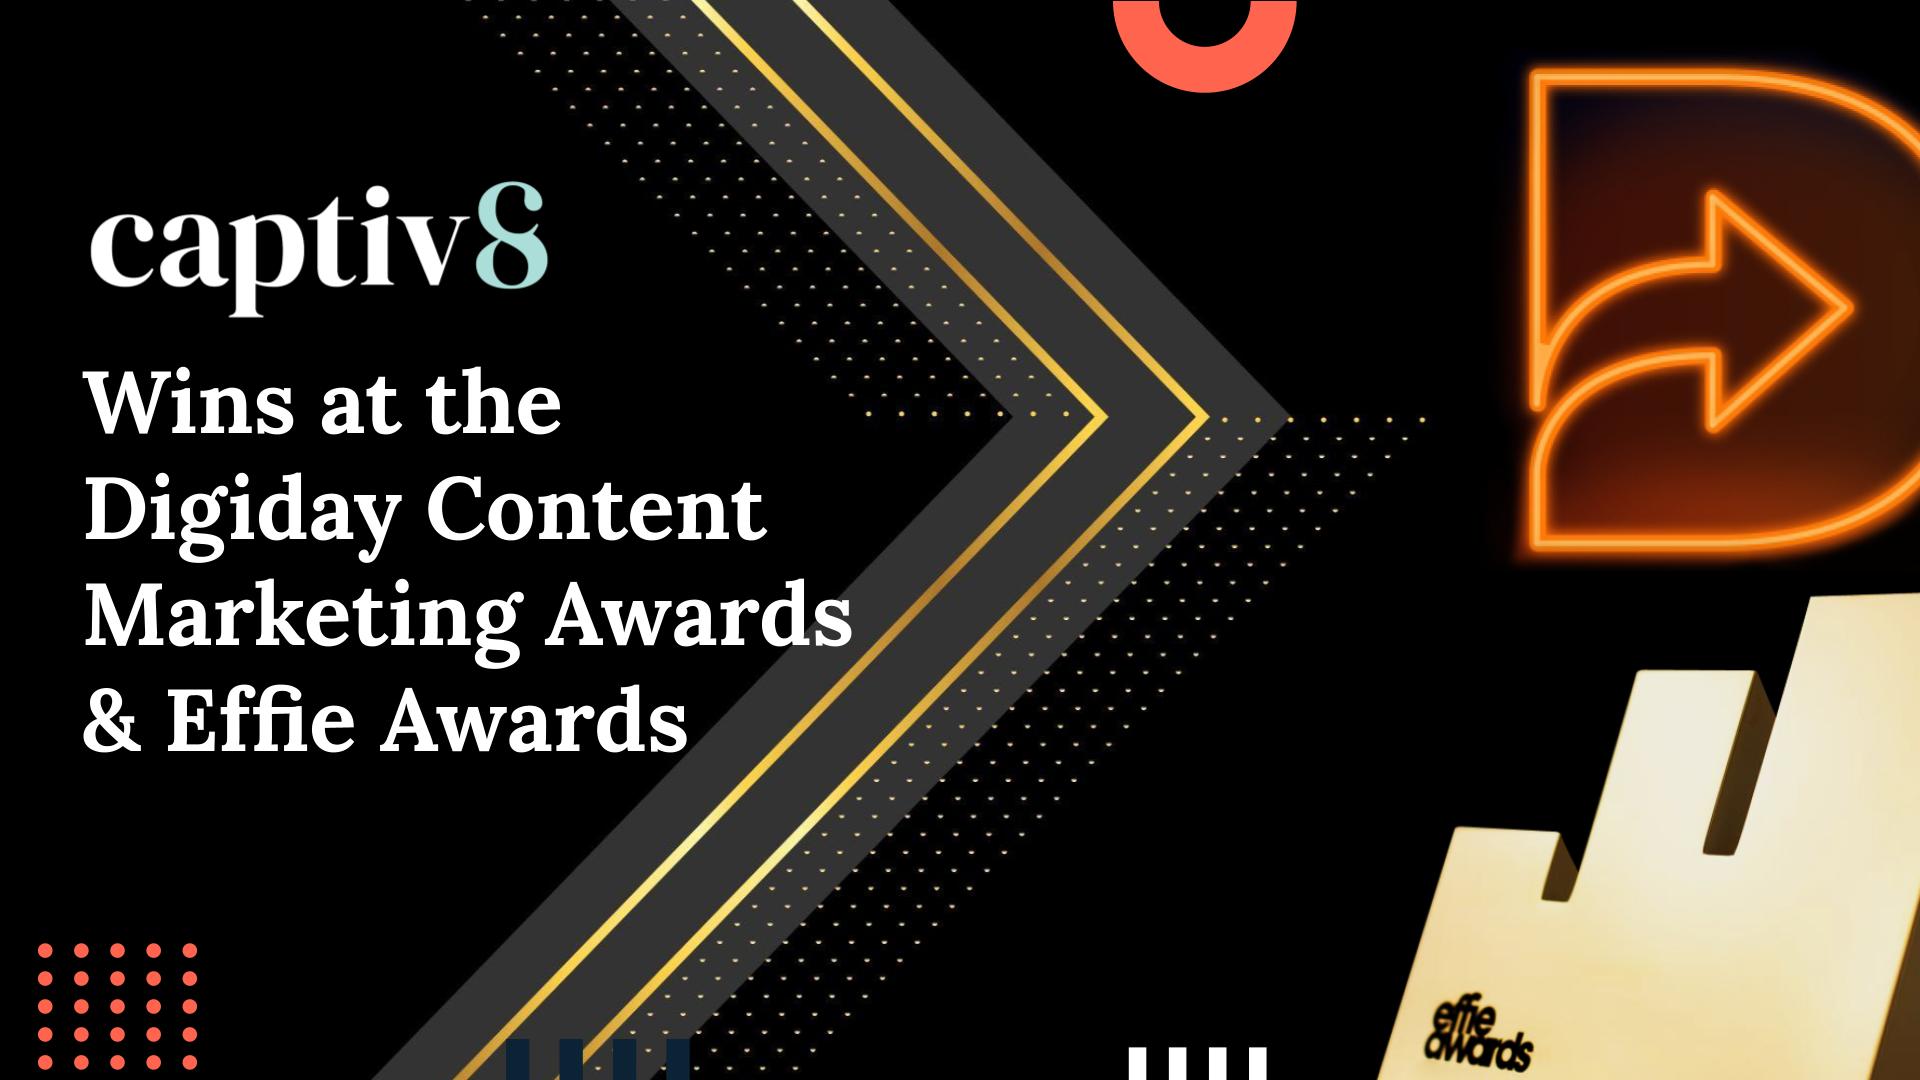 Digiday Content Marketing Awards Captiv8